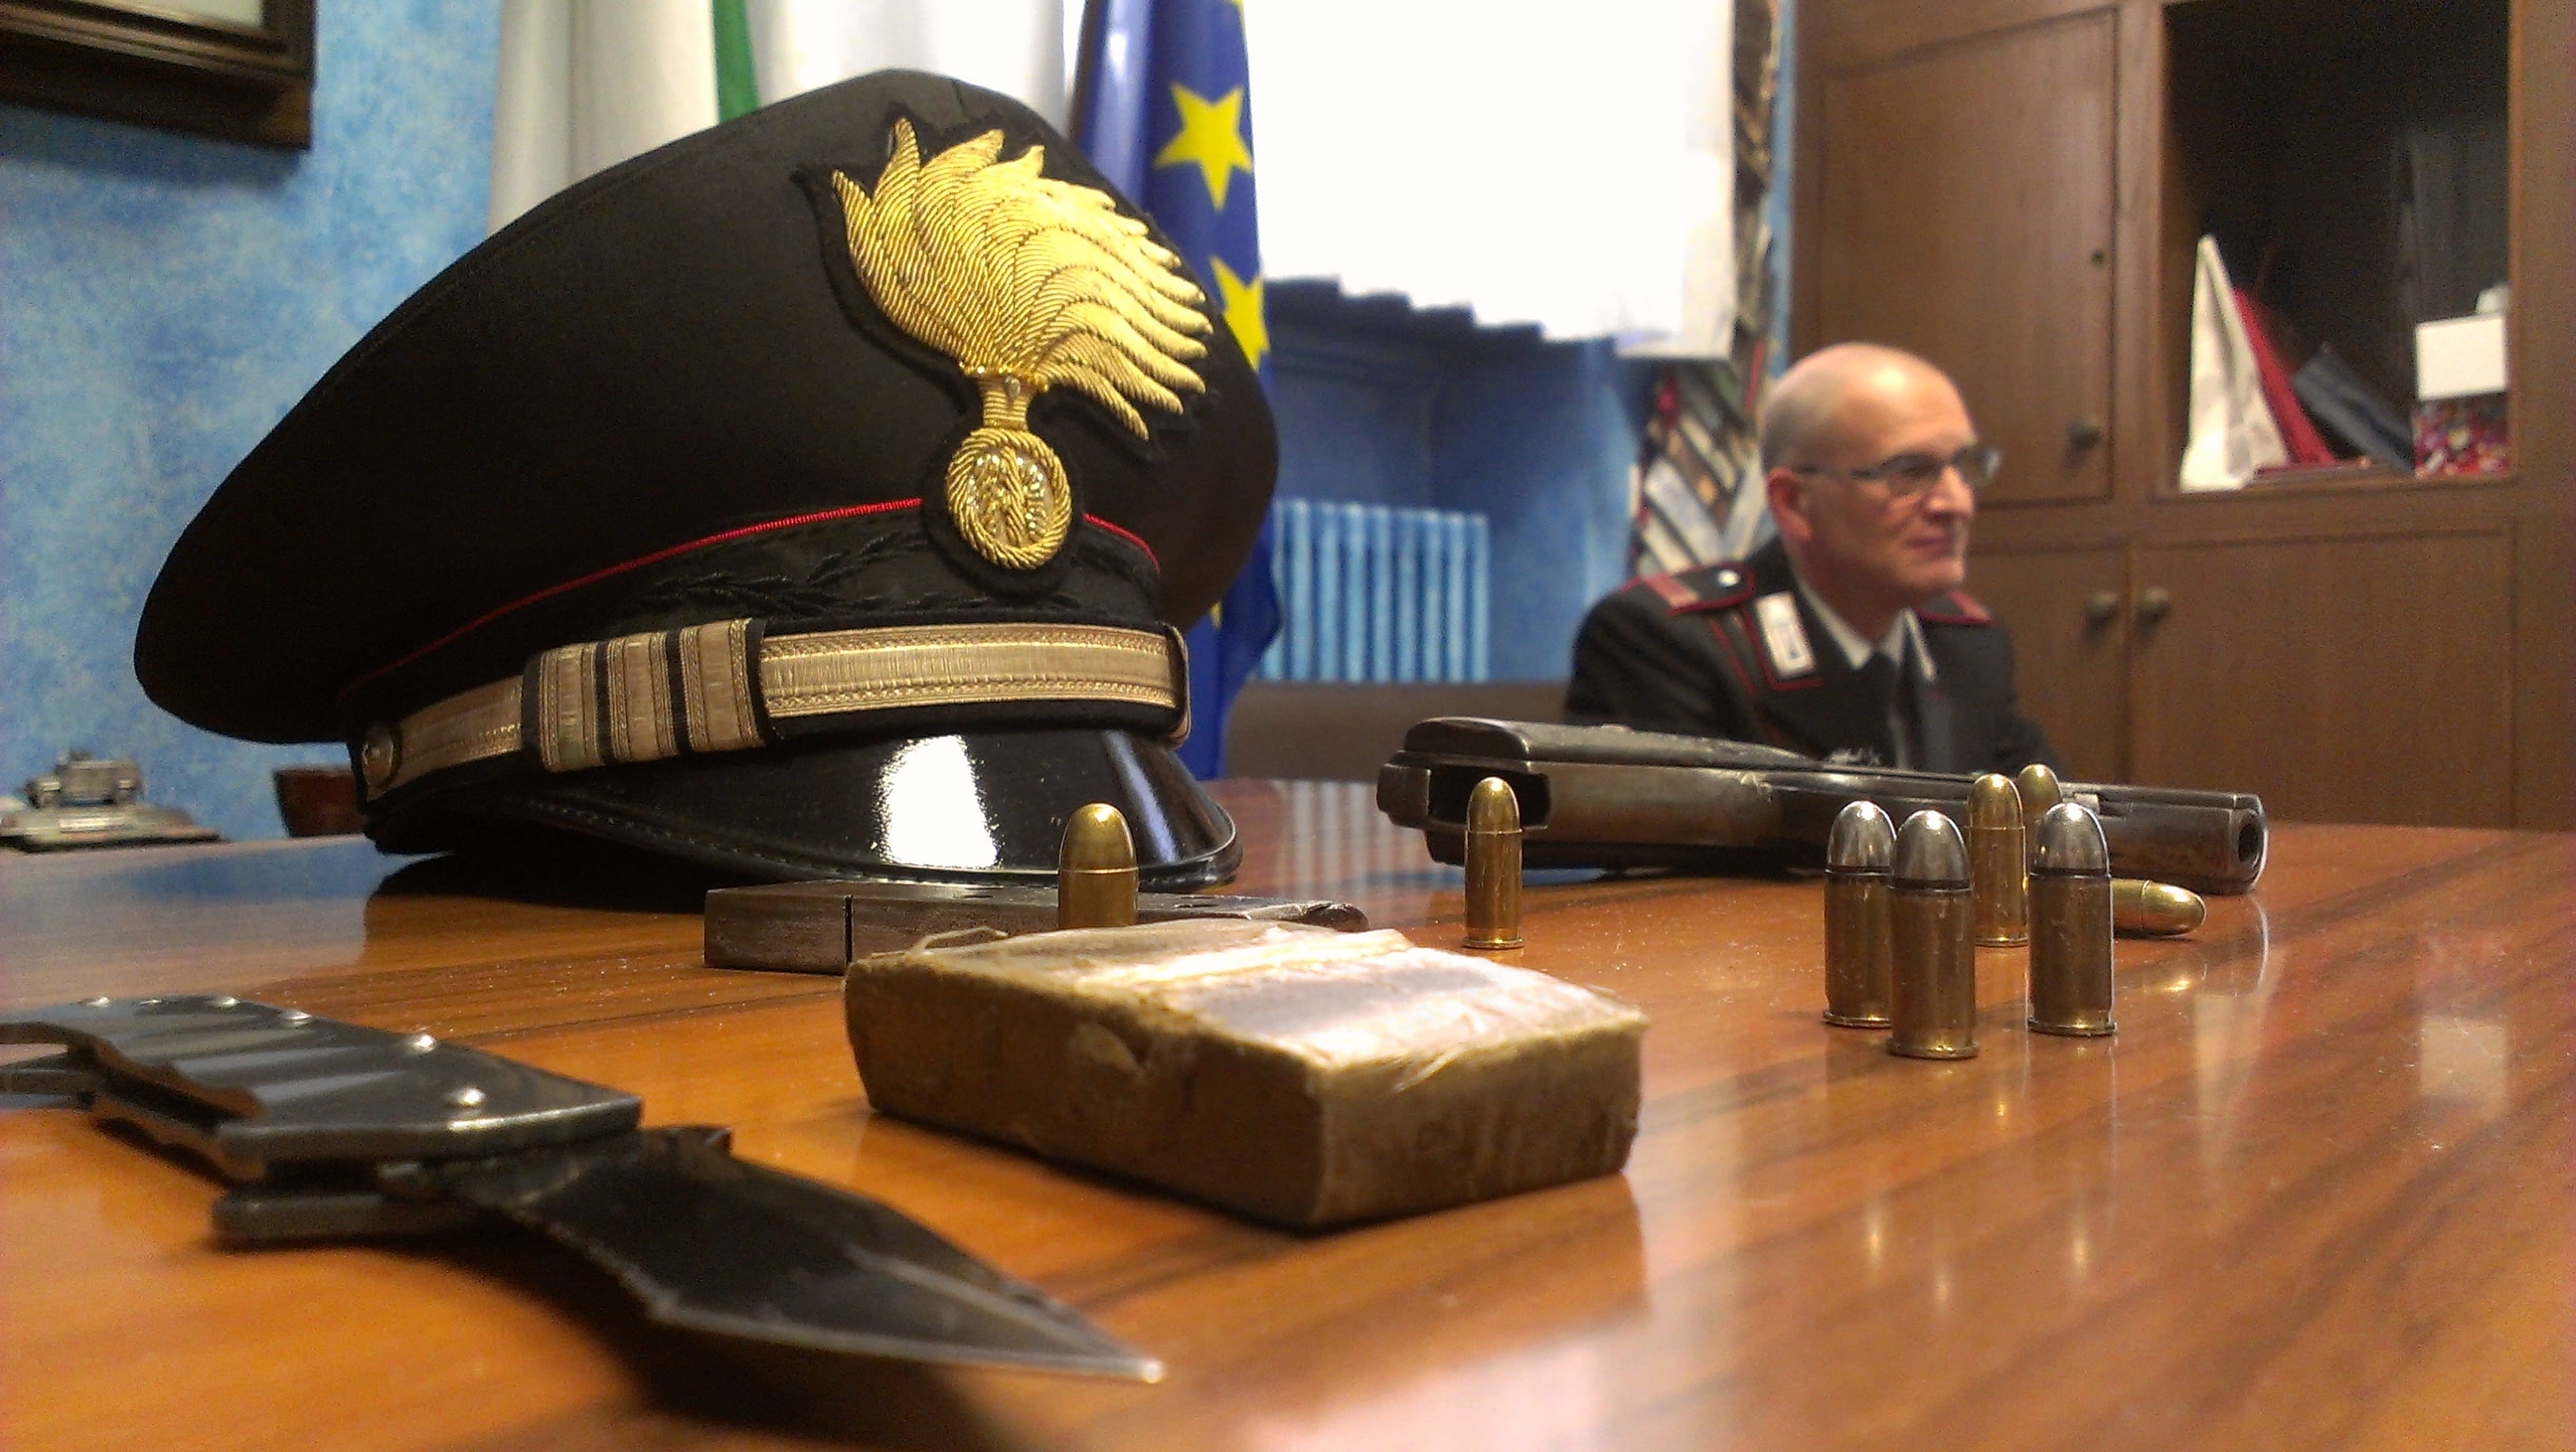 Pistola carica sul sedile: arrestato al Matteotti